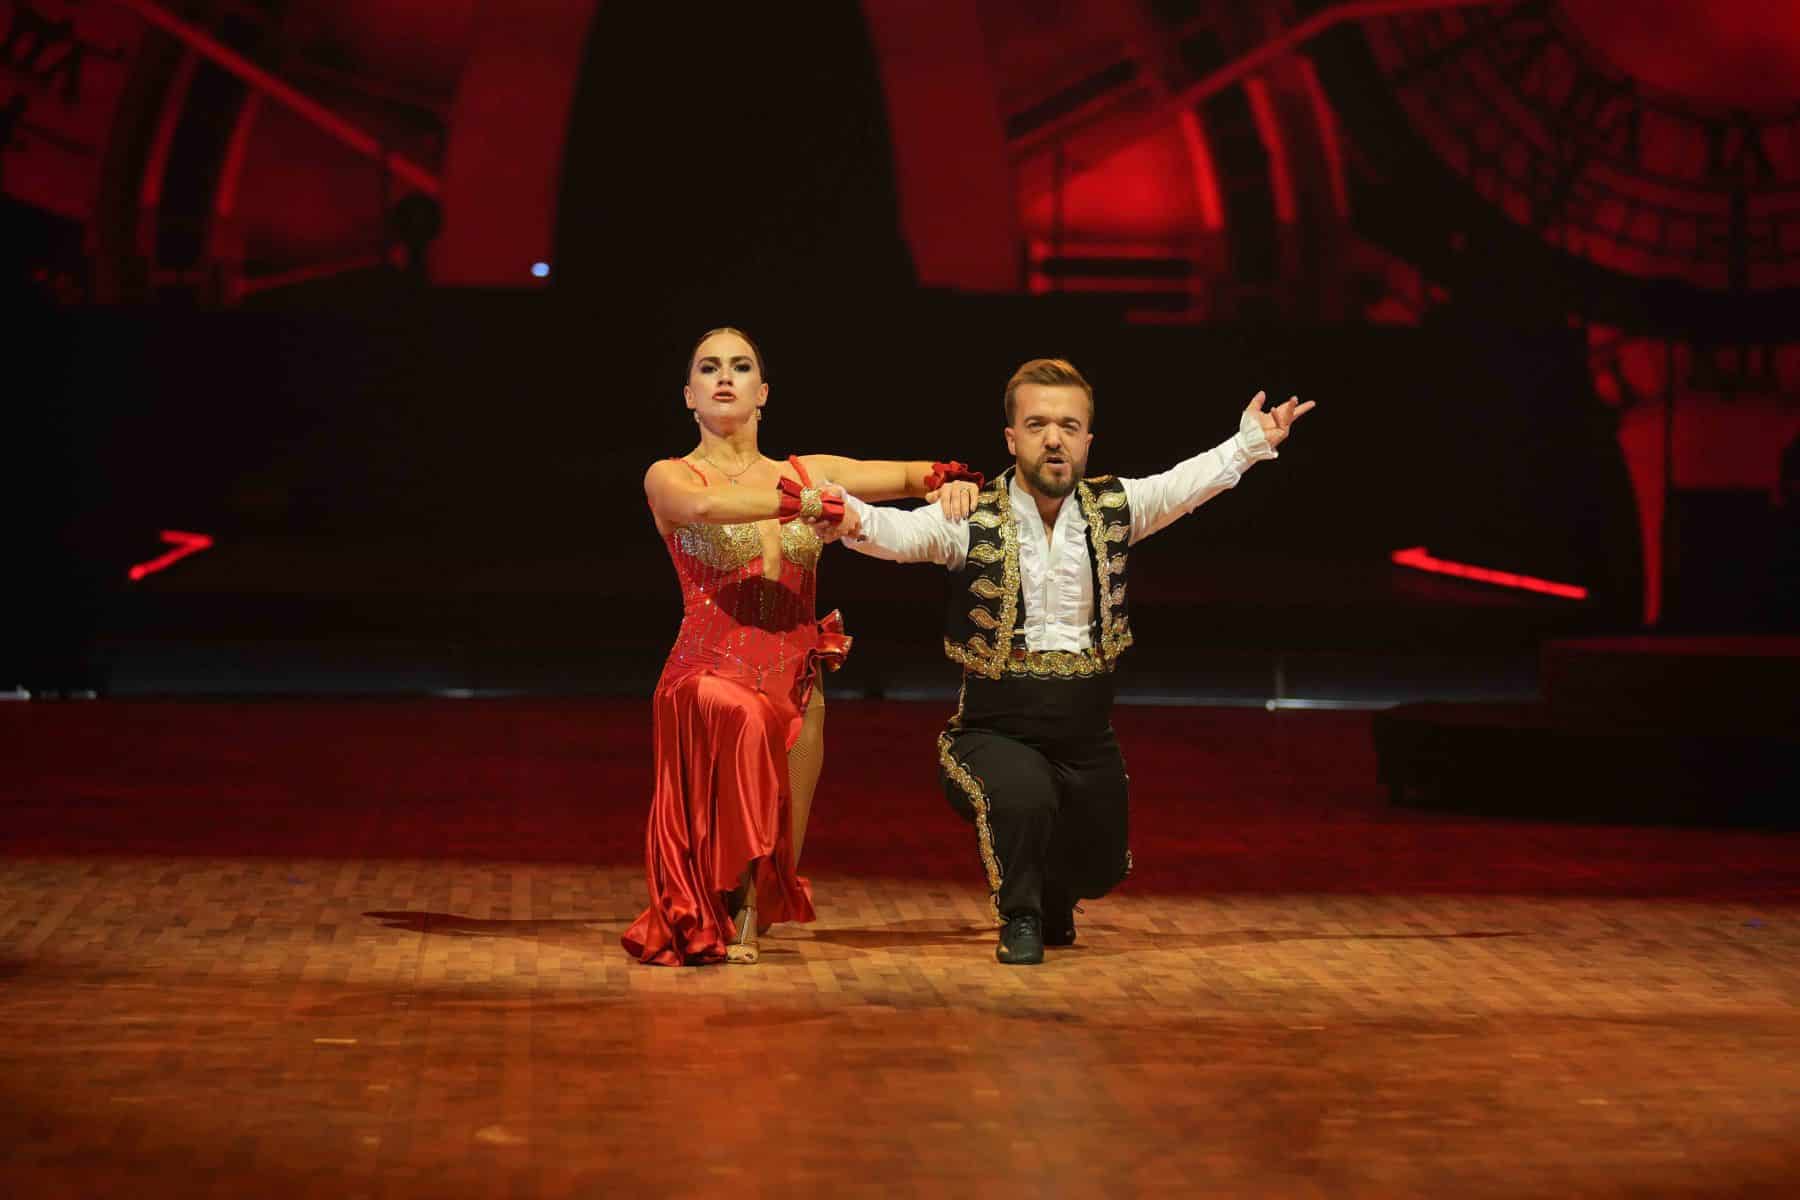 14.11.2022 Tänzerin Renata Lusin und Leichtathlet Mathias Mester bei der Show Let s Dance - Die Live-Tournee 2022.